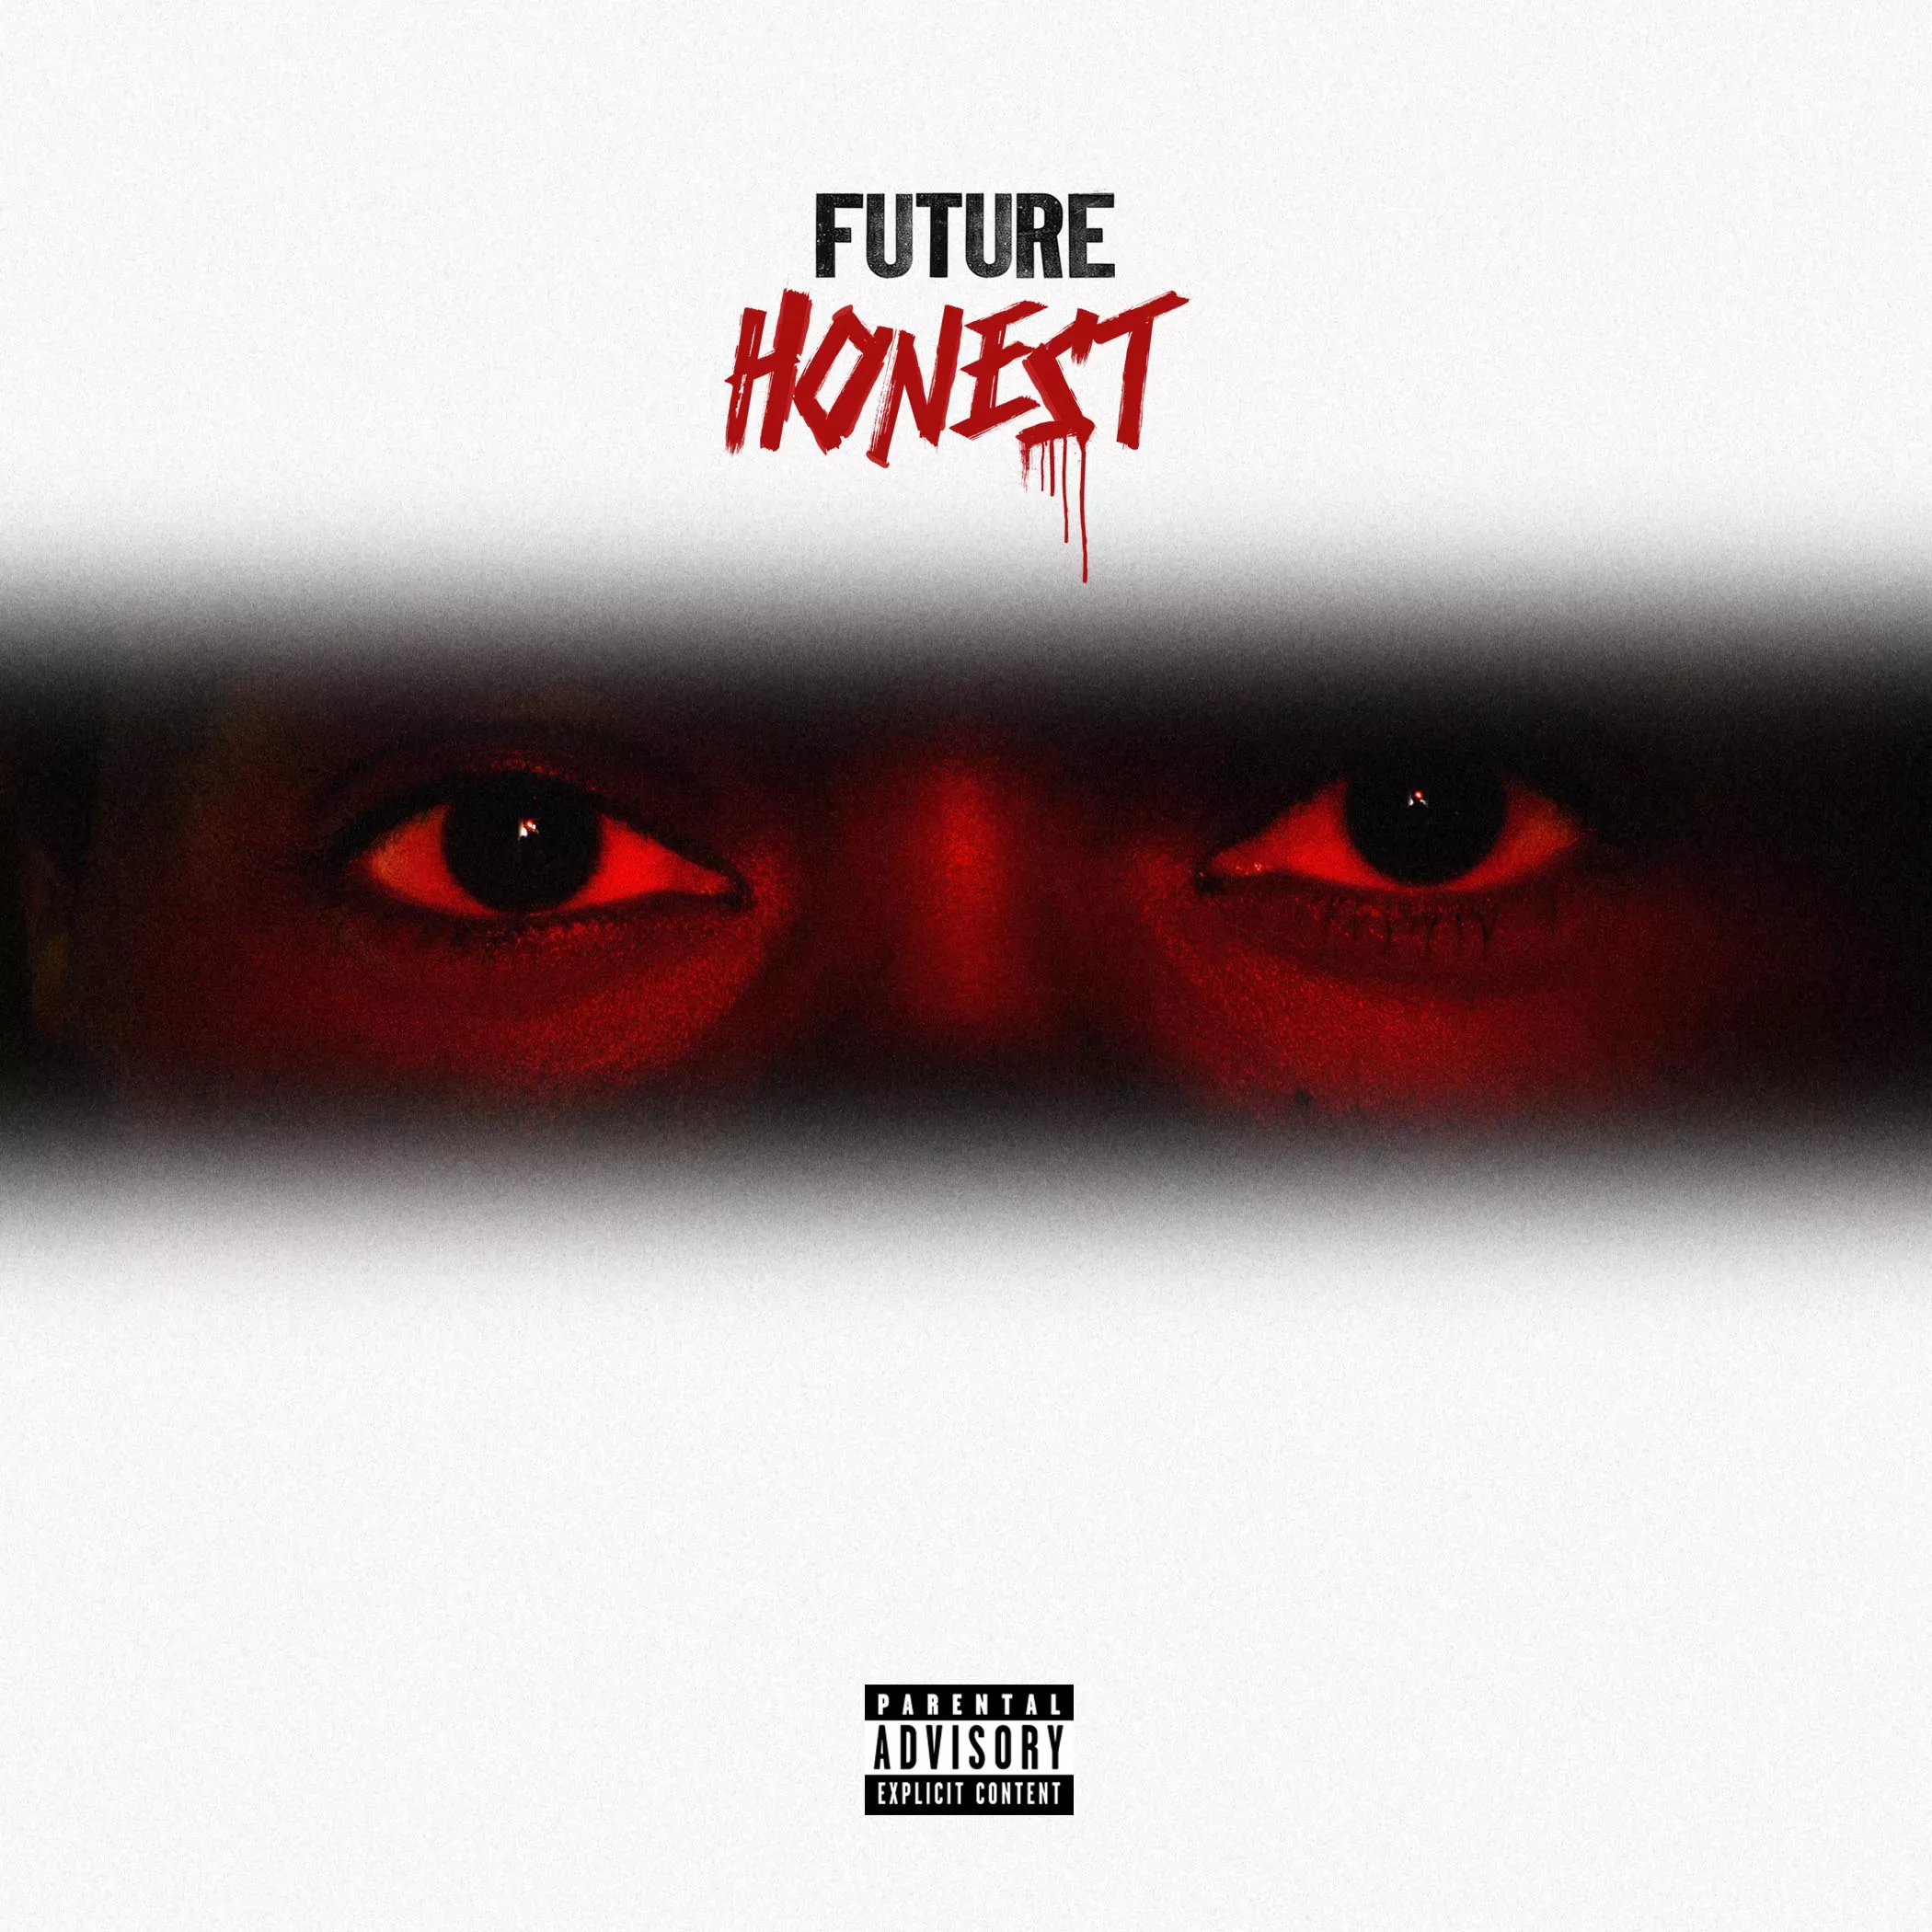 Honest - Future